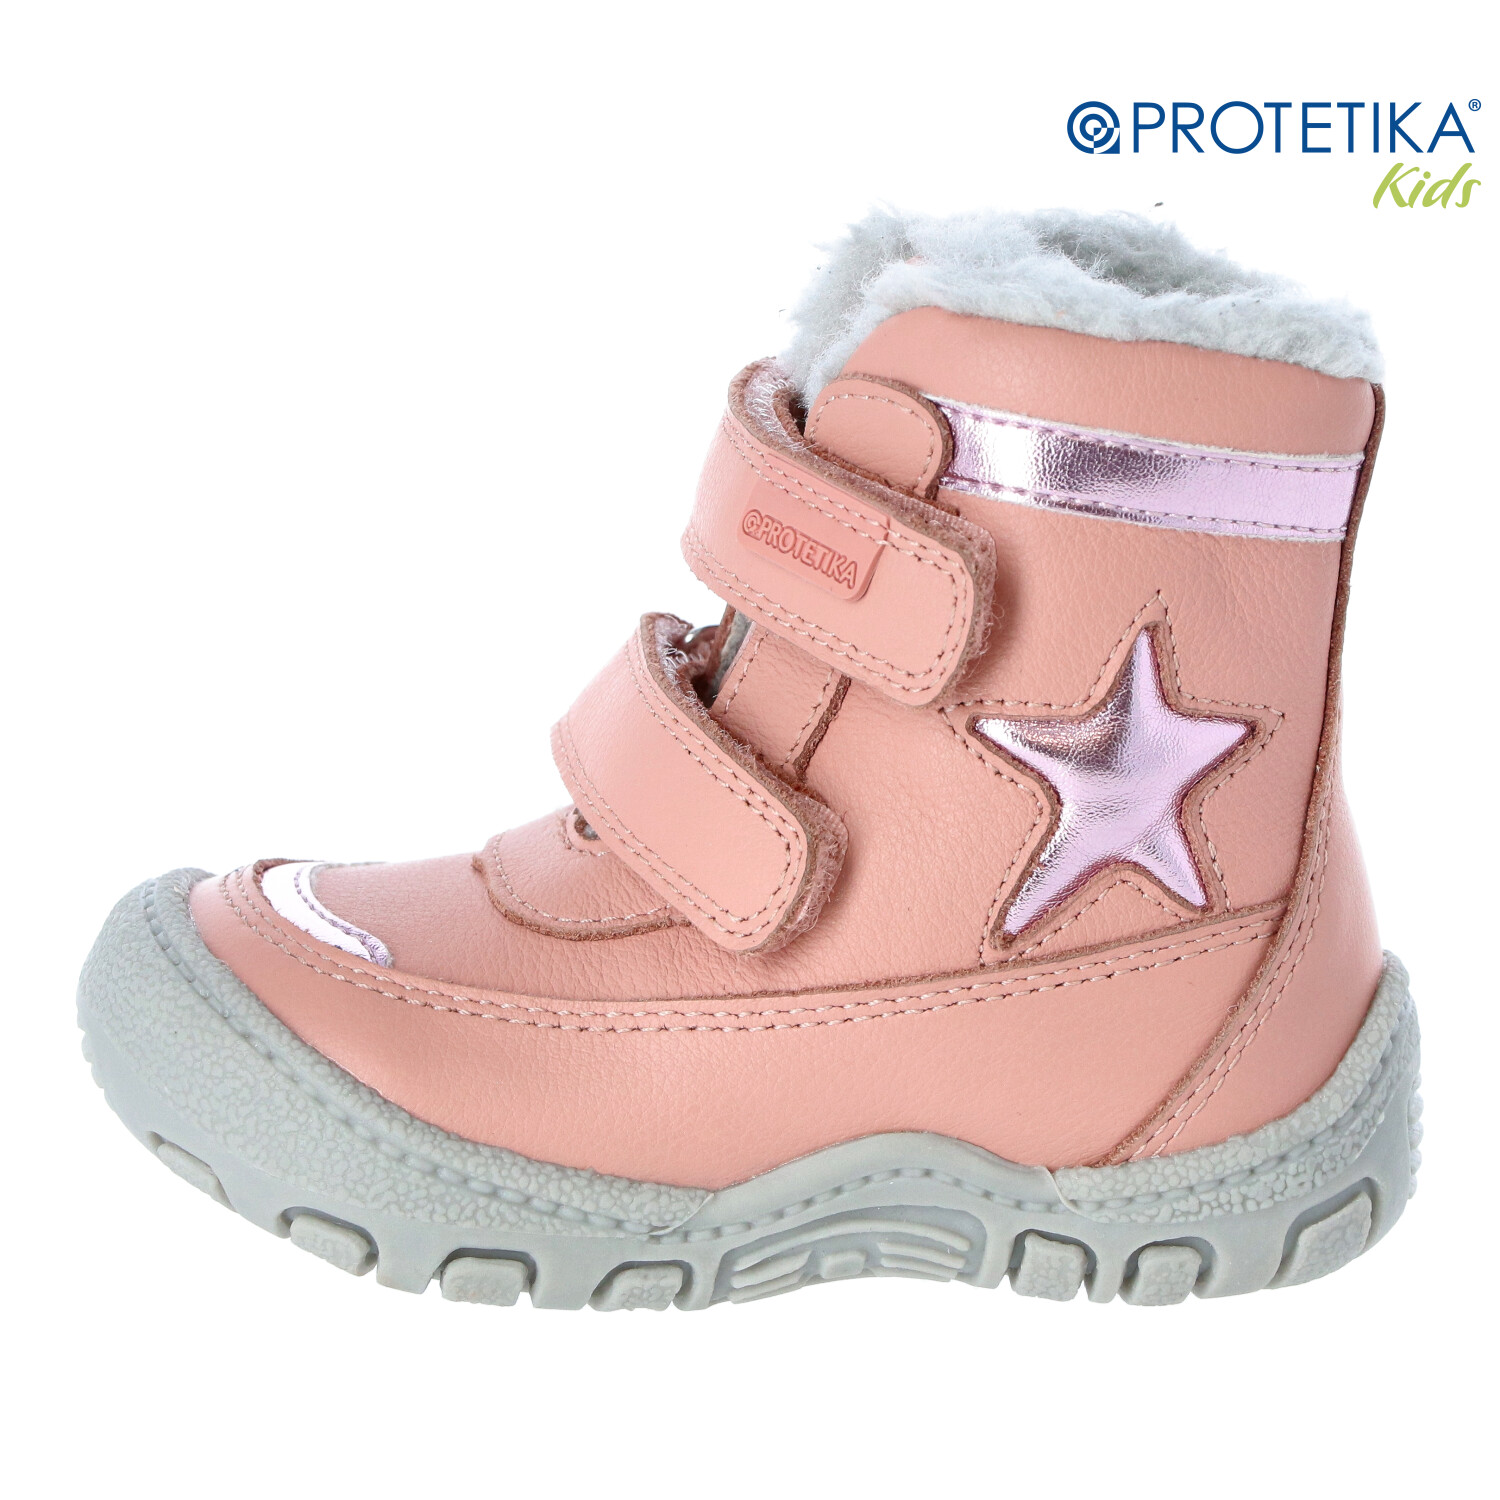 Protetika - zimné topánky s kožušinkou PULA pink